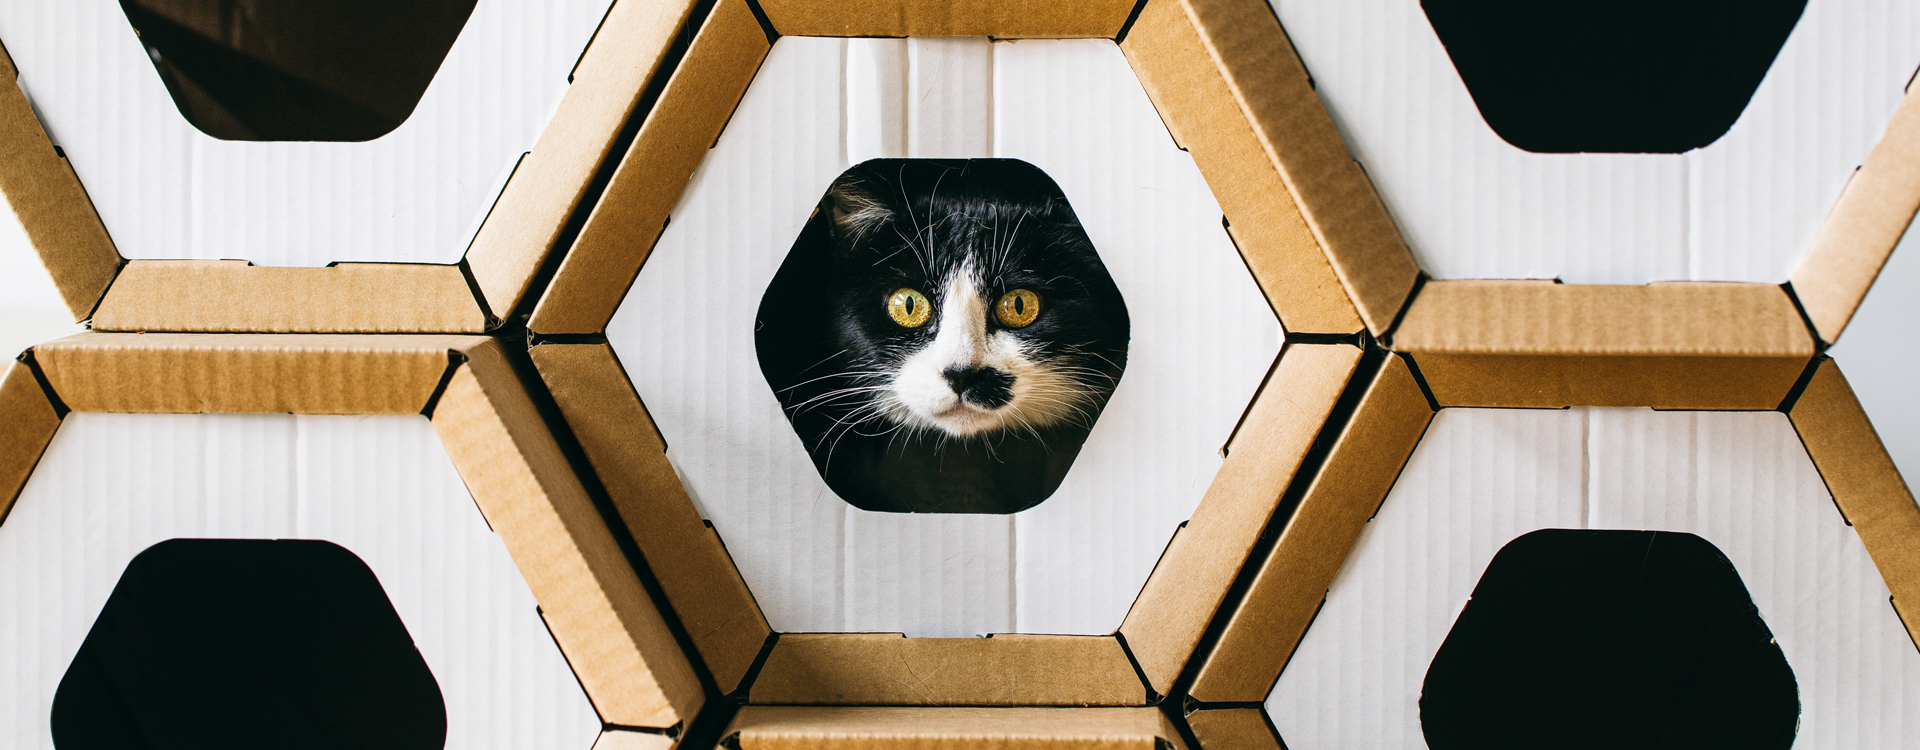 Cajas de cartón para gatos. ¿Hay estudios que las recomienden?